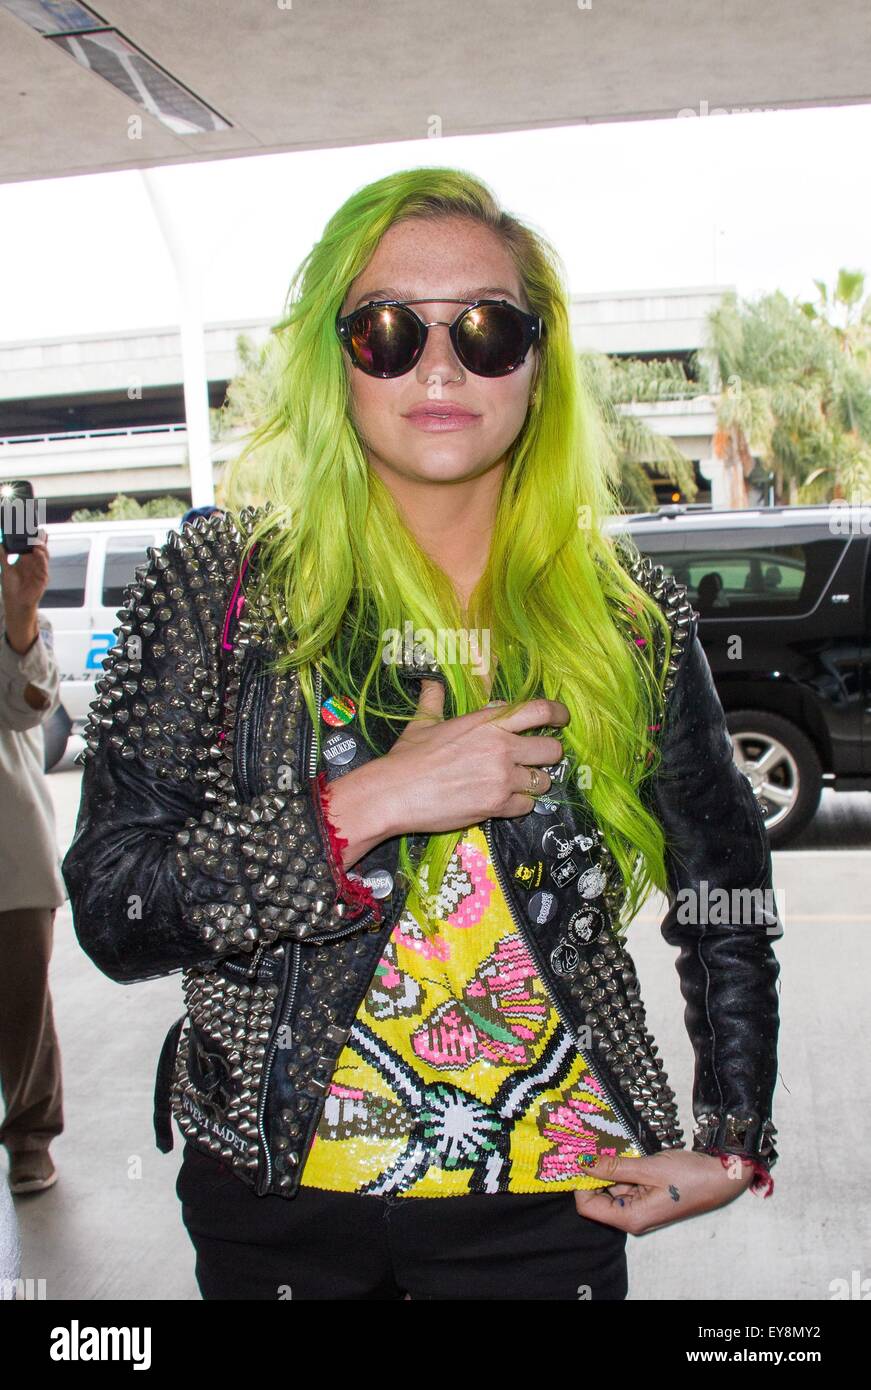 Kesha llega al Aeropuerto Internacional de Los Ángeles (LAX) con neón con pelo: Kesha donde: Los Angeles, California, Estados Unidos cuando: 22 de mayo de 2015 Foto de stock